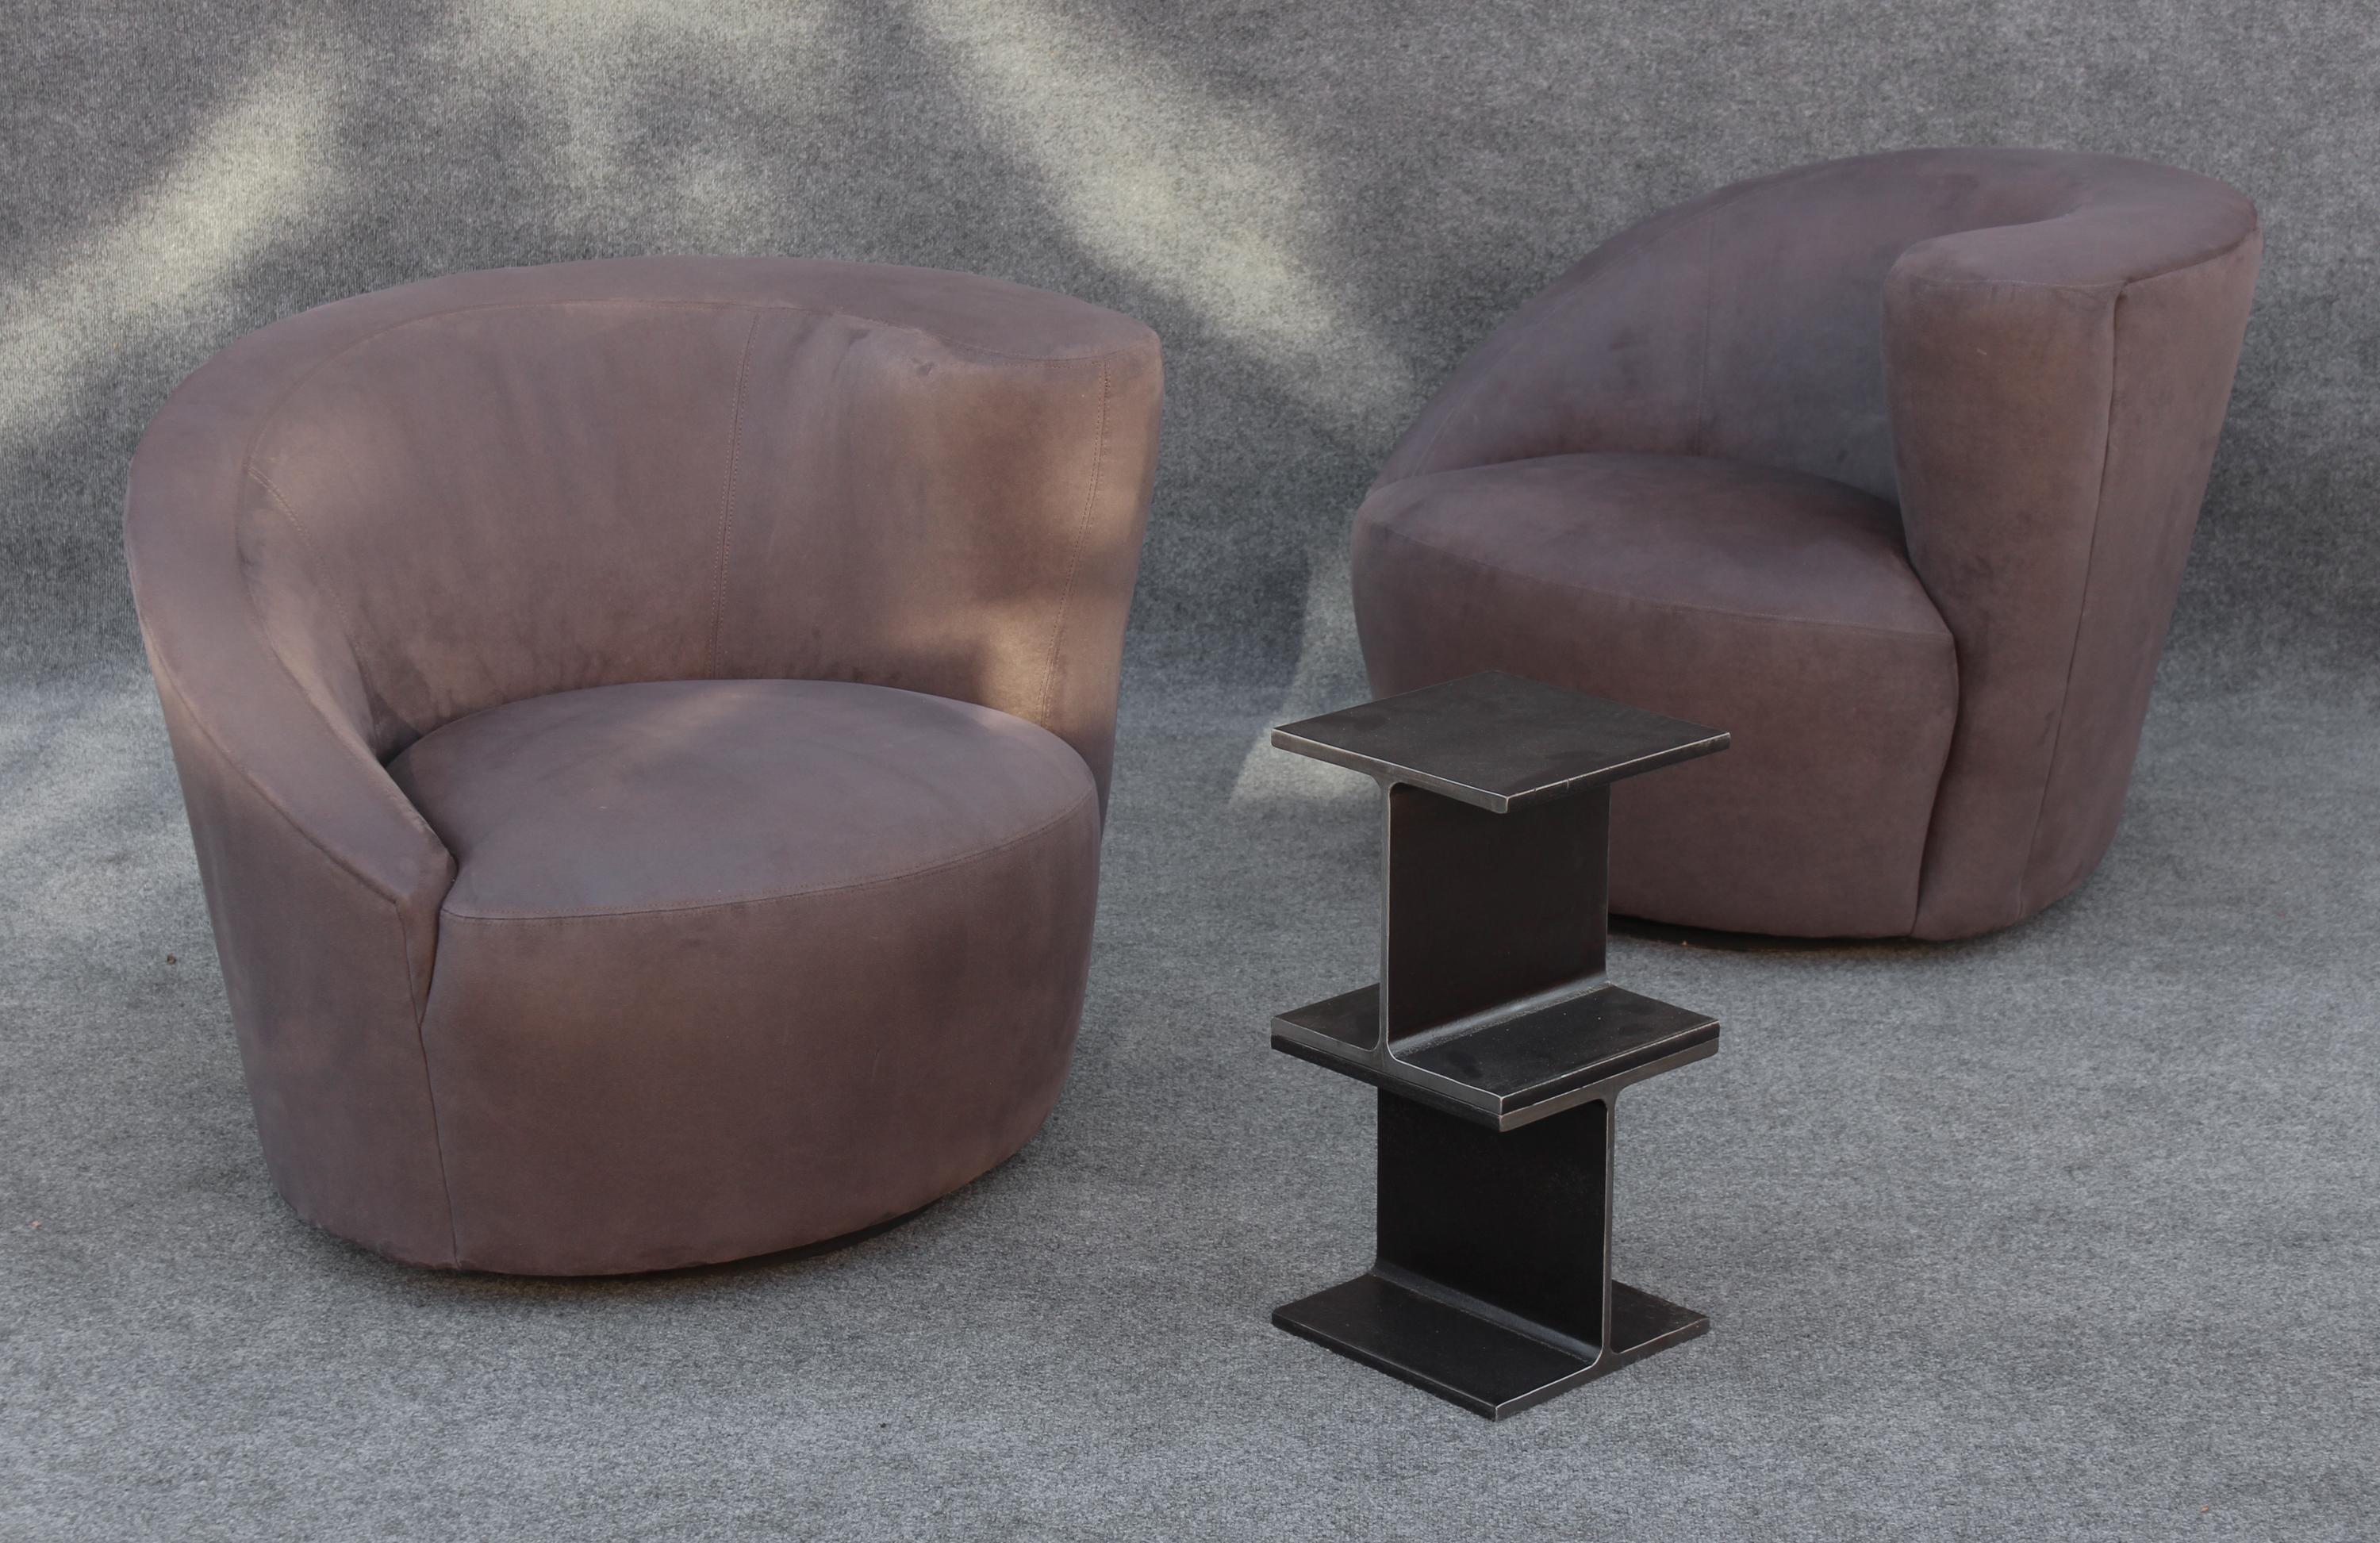 Conçue par Vladimir Kagan pour le prestigieux fabricant Directional, cette paire de chaises identiques, non symétriques, est rare et exclusive. Leur design distinct et organique se caractérise par une forme incurvée, semblable à une coquille, faite